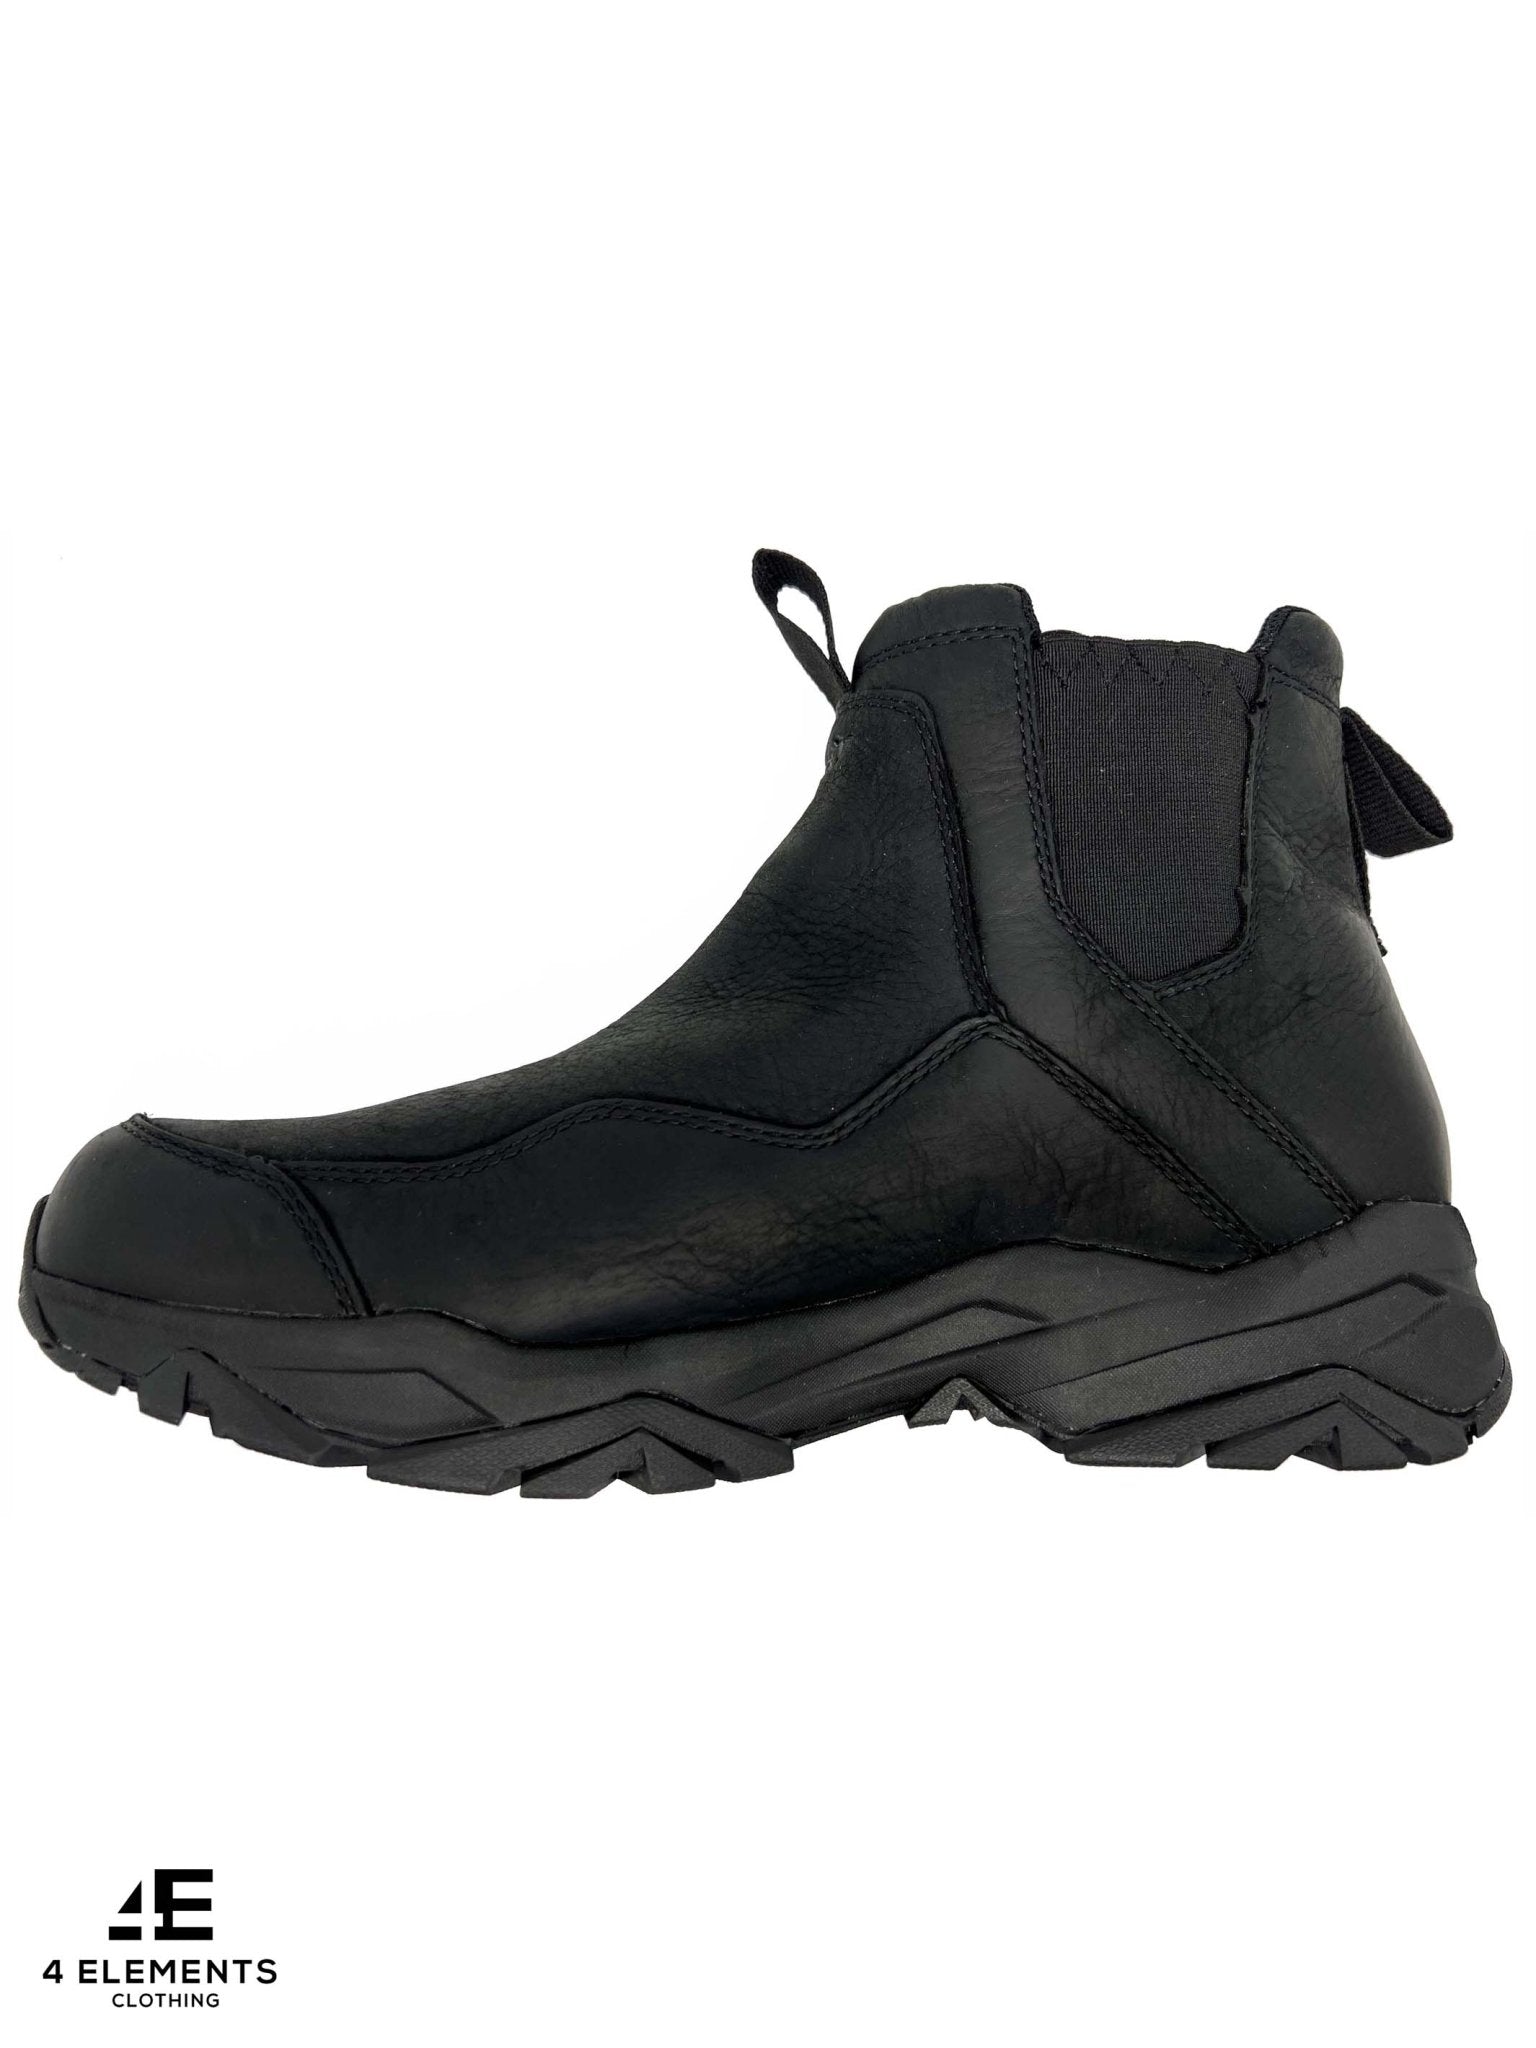 Treksta Treksta - Gore - Tex Waterproof Dealer Boot / Stamford Chelsea Boots